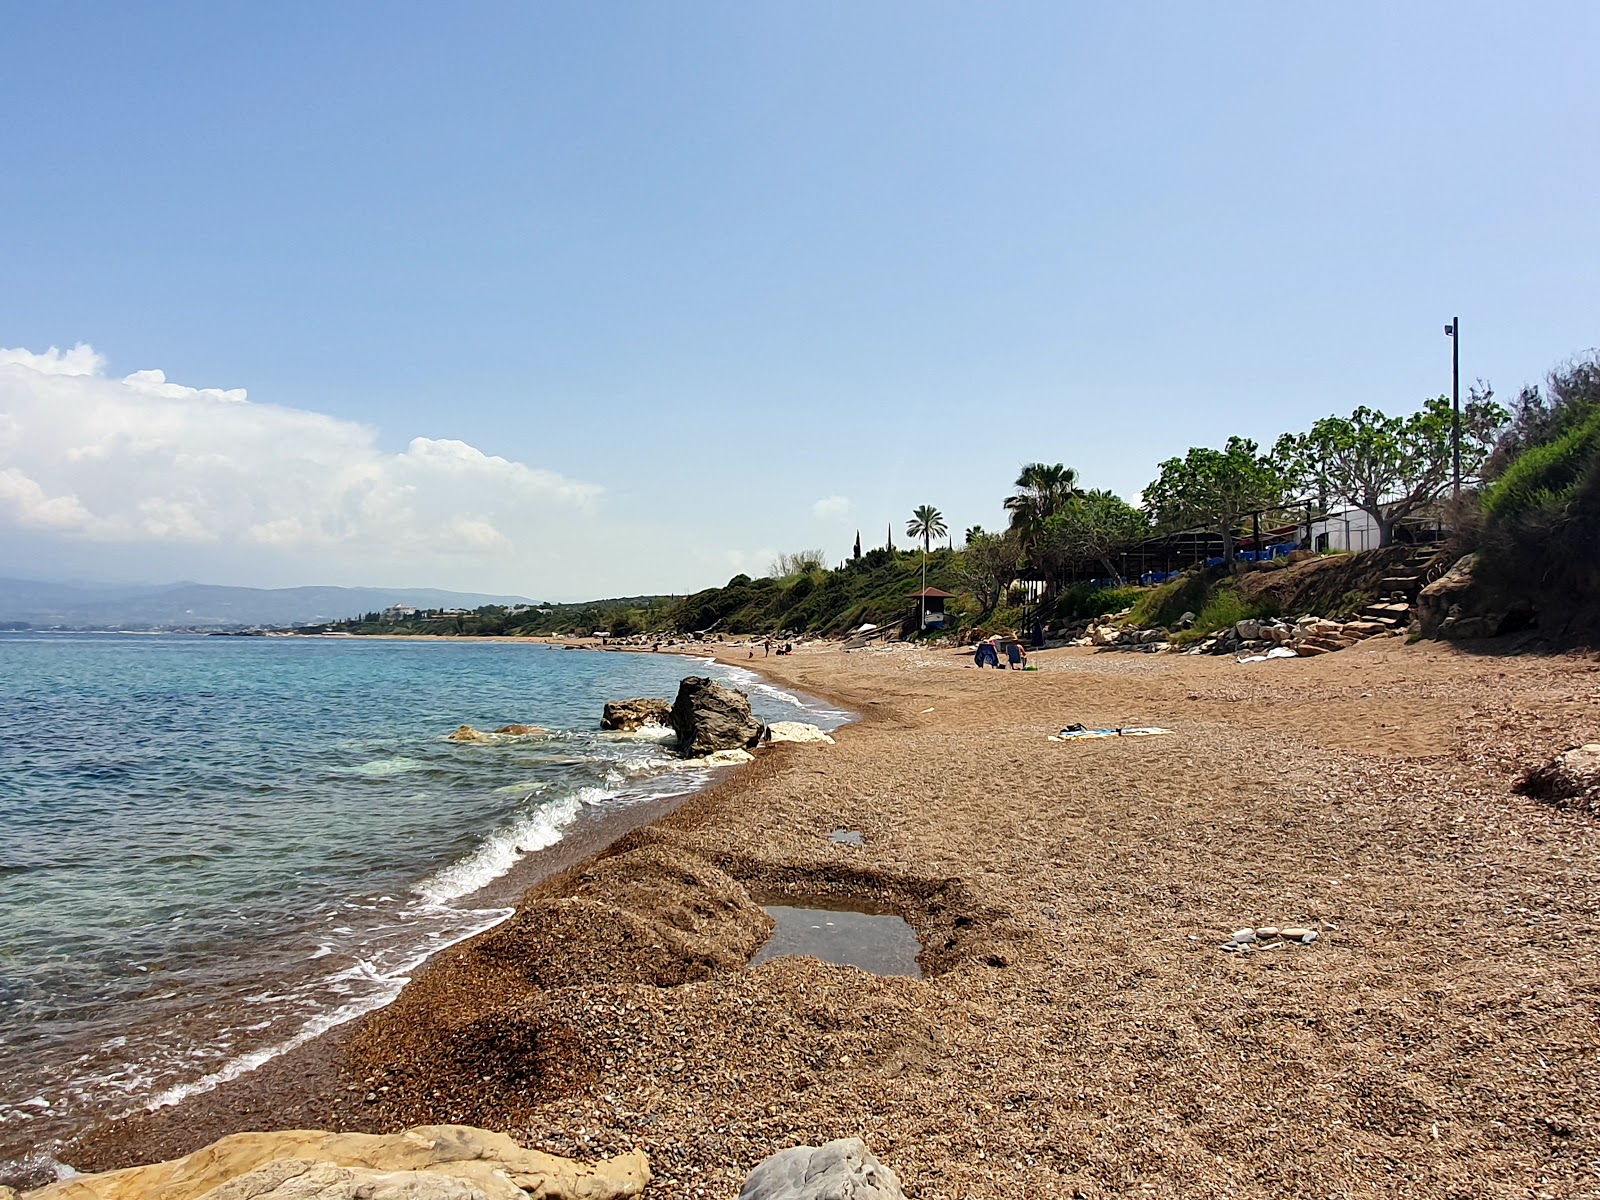 Ttakka beach'in fotoğrafı ve yerleşim